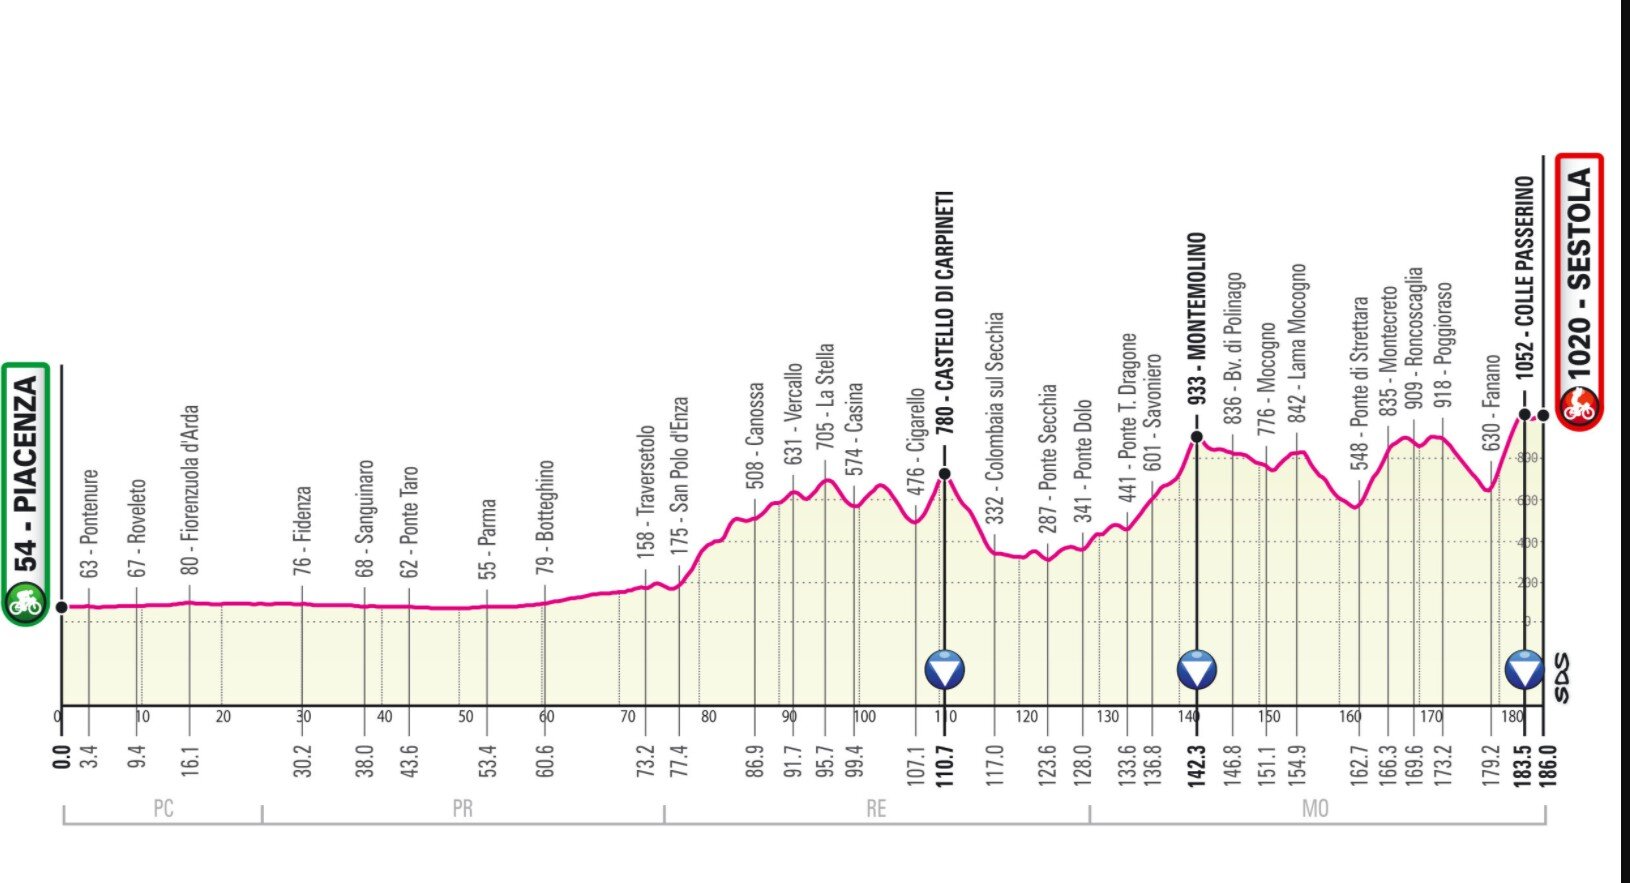 Stage 4 Giro Italia 2021